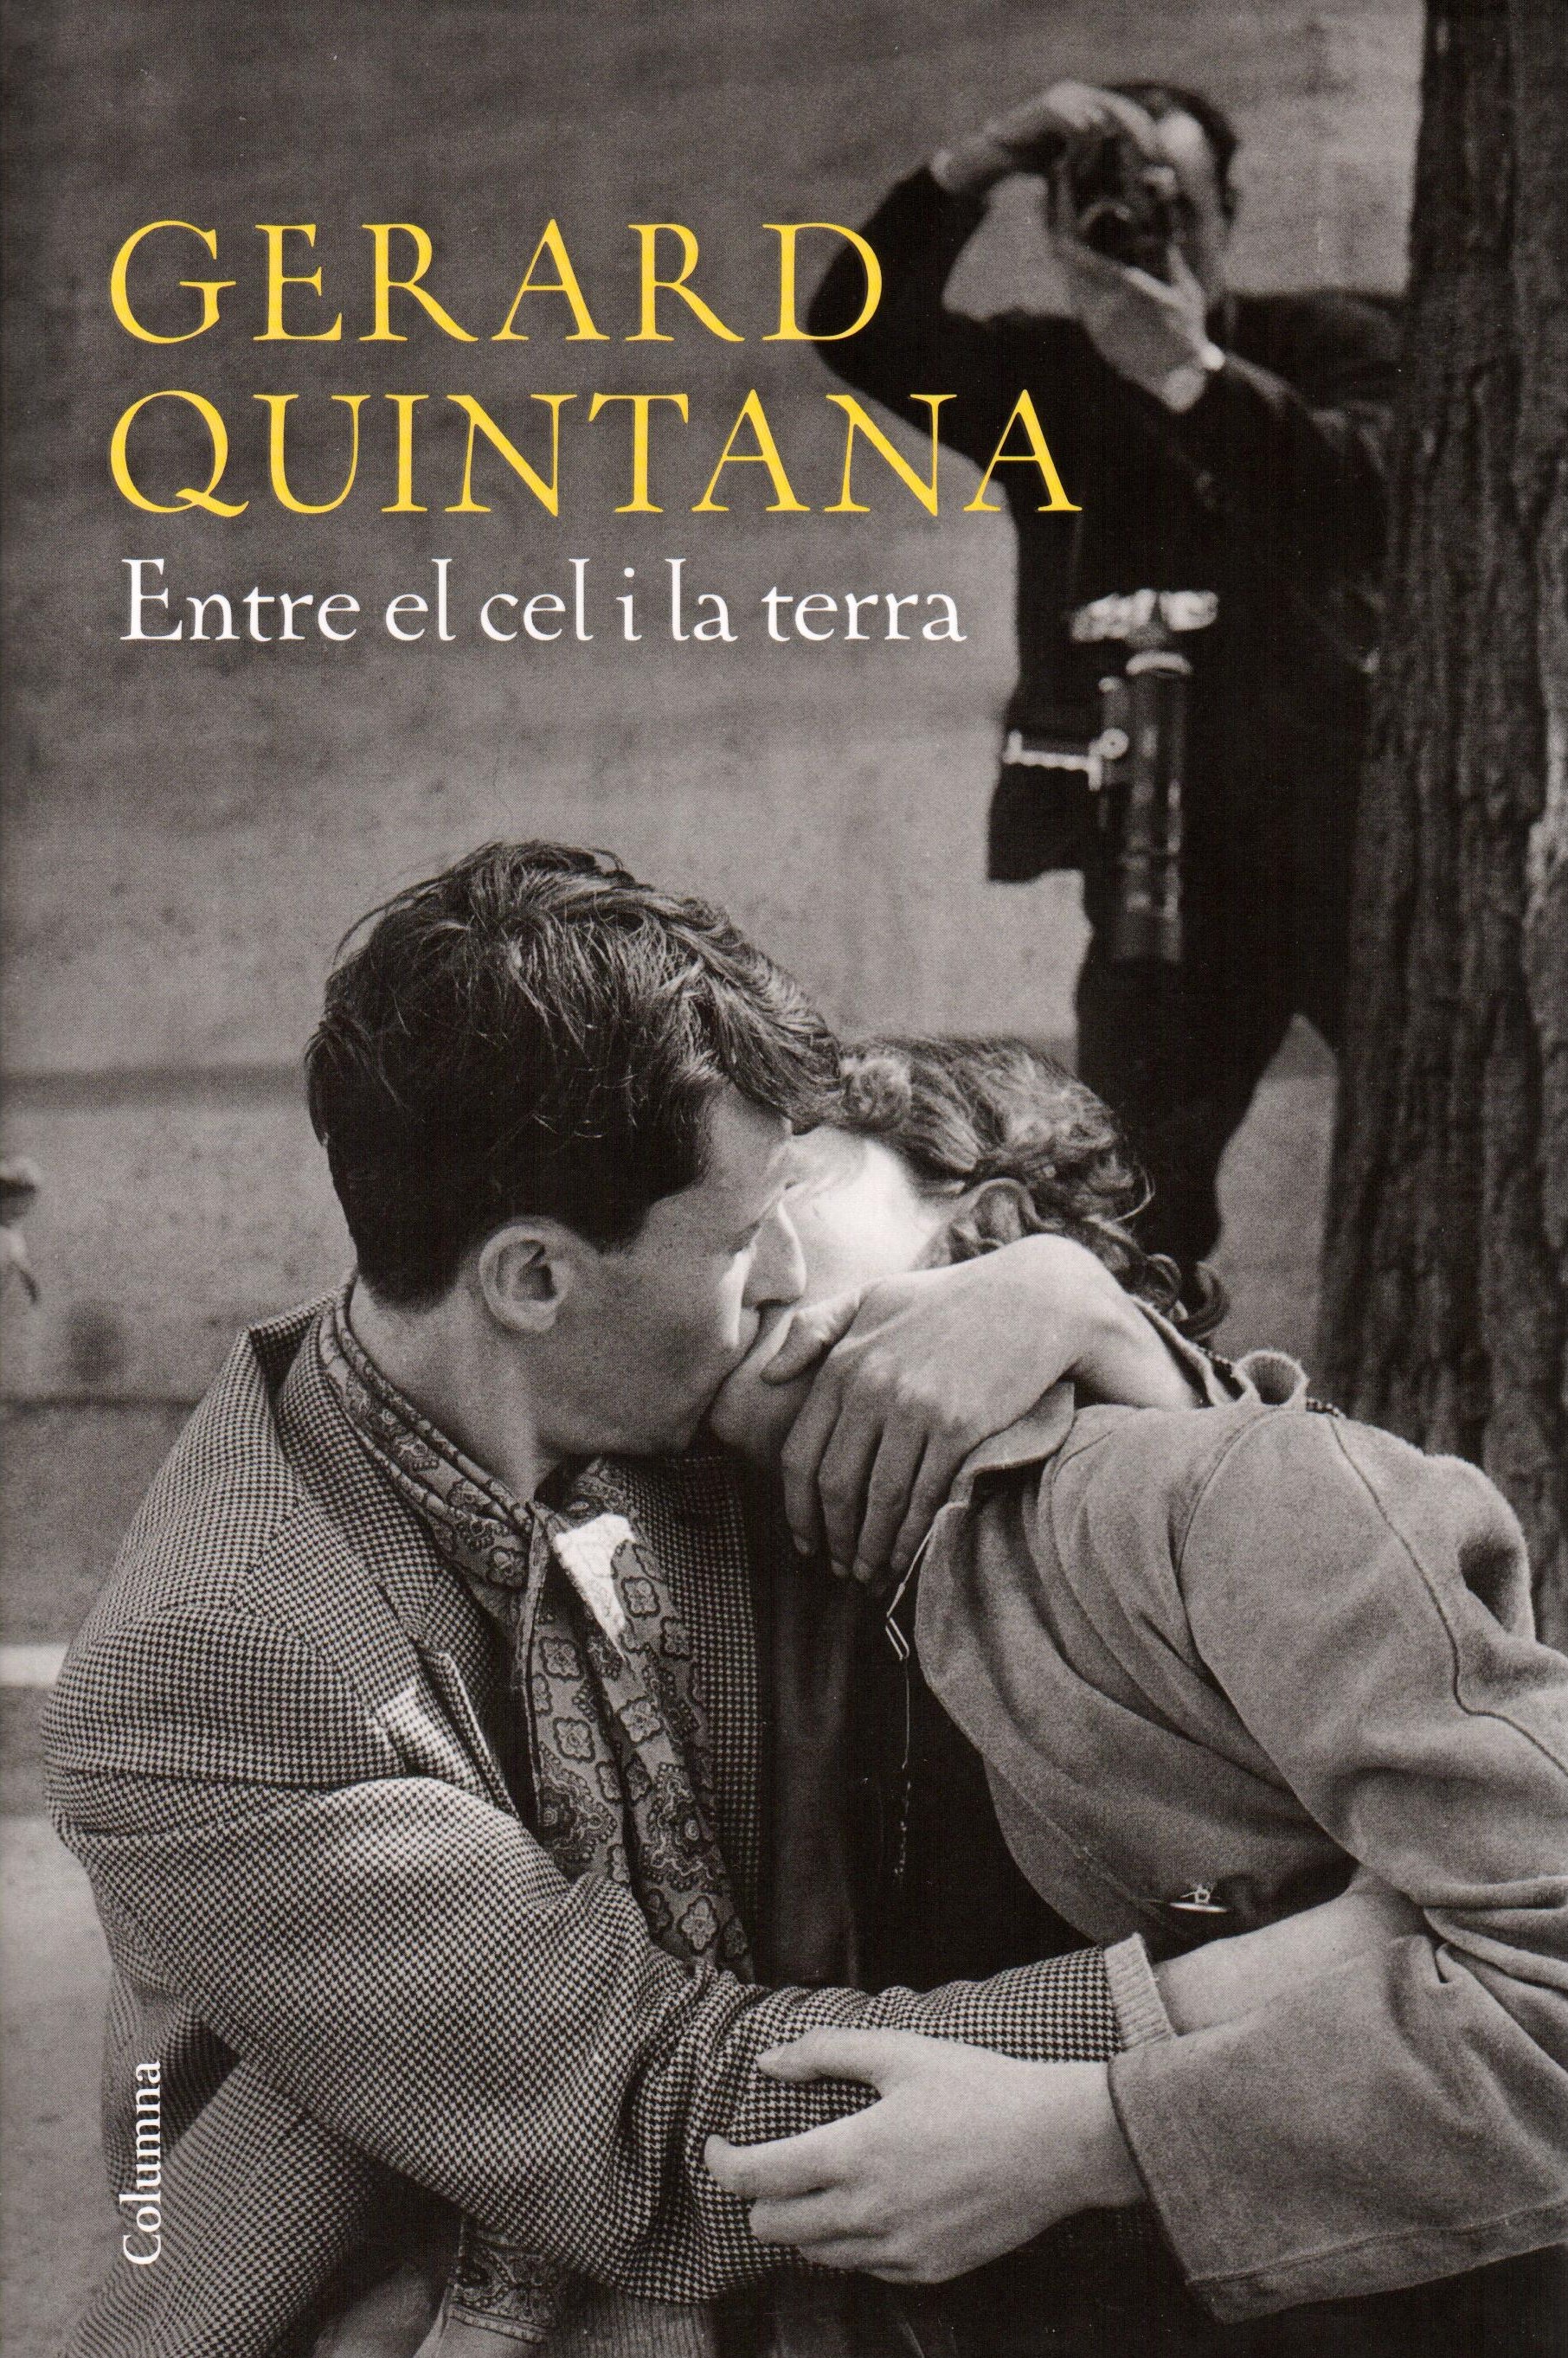 Gerard Quintana: "En mi novela recupero momentos que reflejan lo que estamos viviendo ahora"